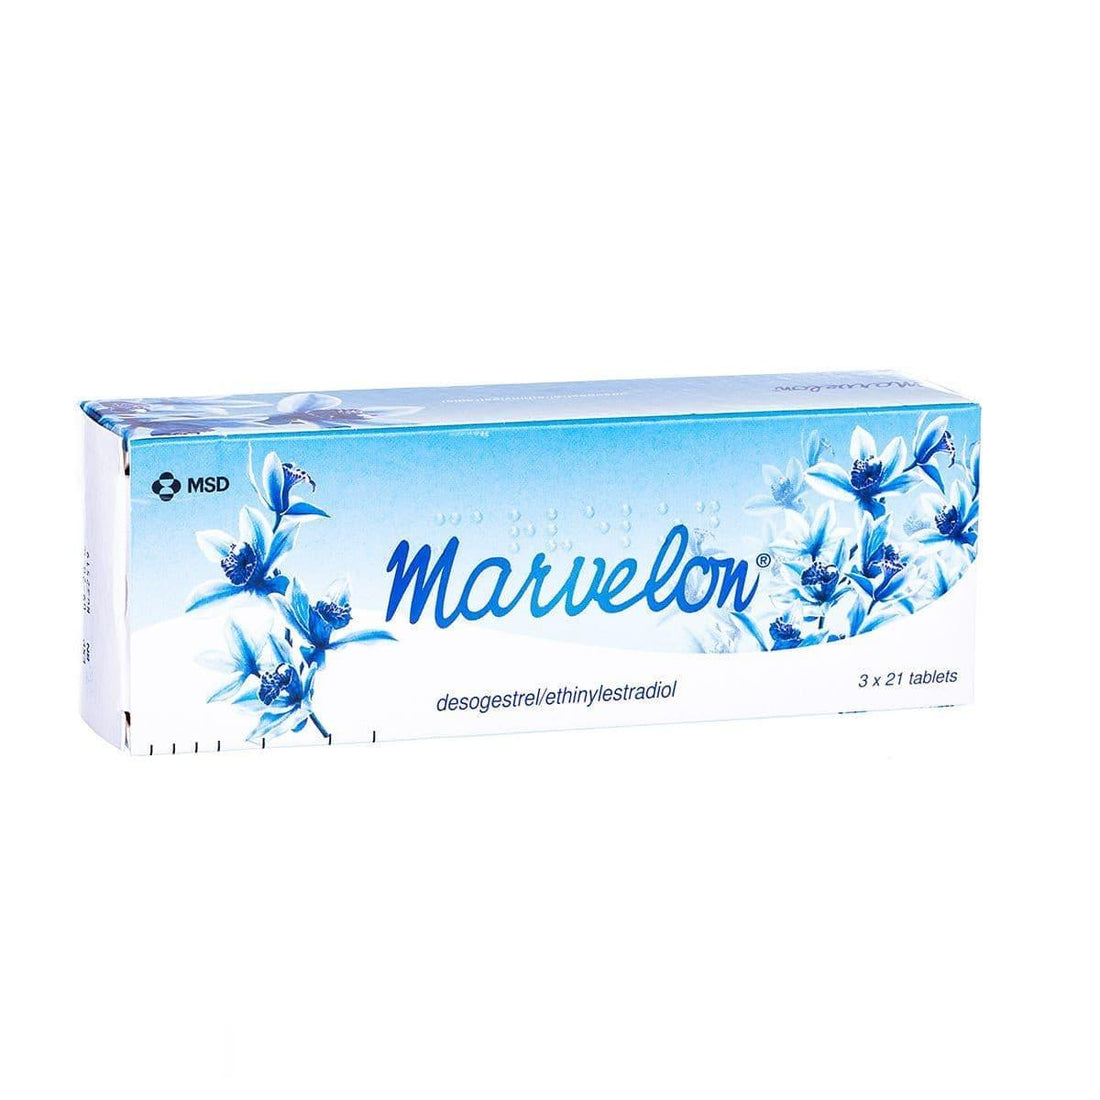 Marvelon Tablets - Rightangled